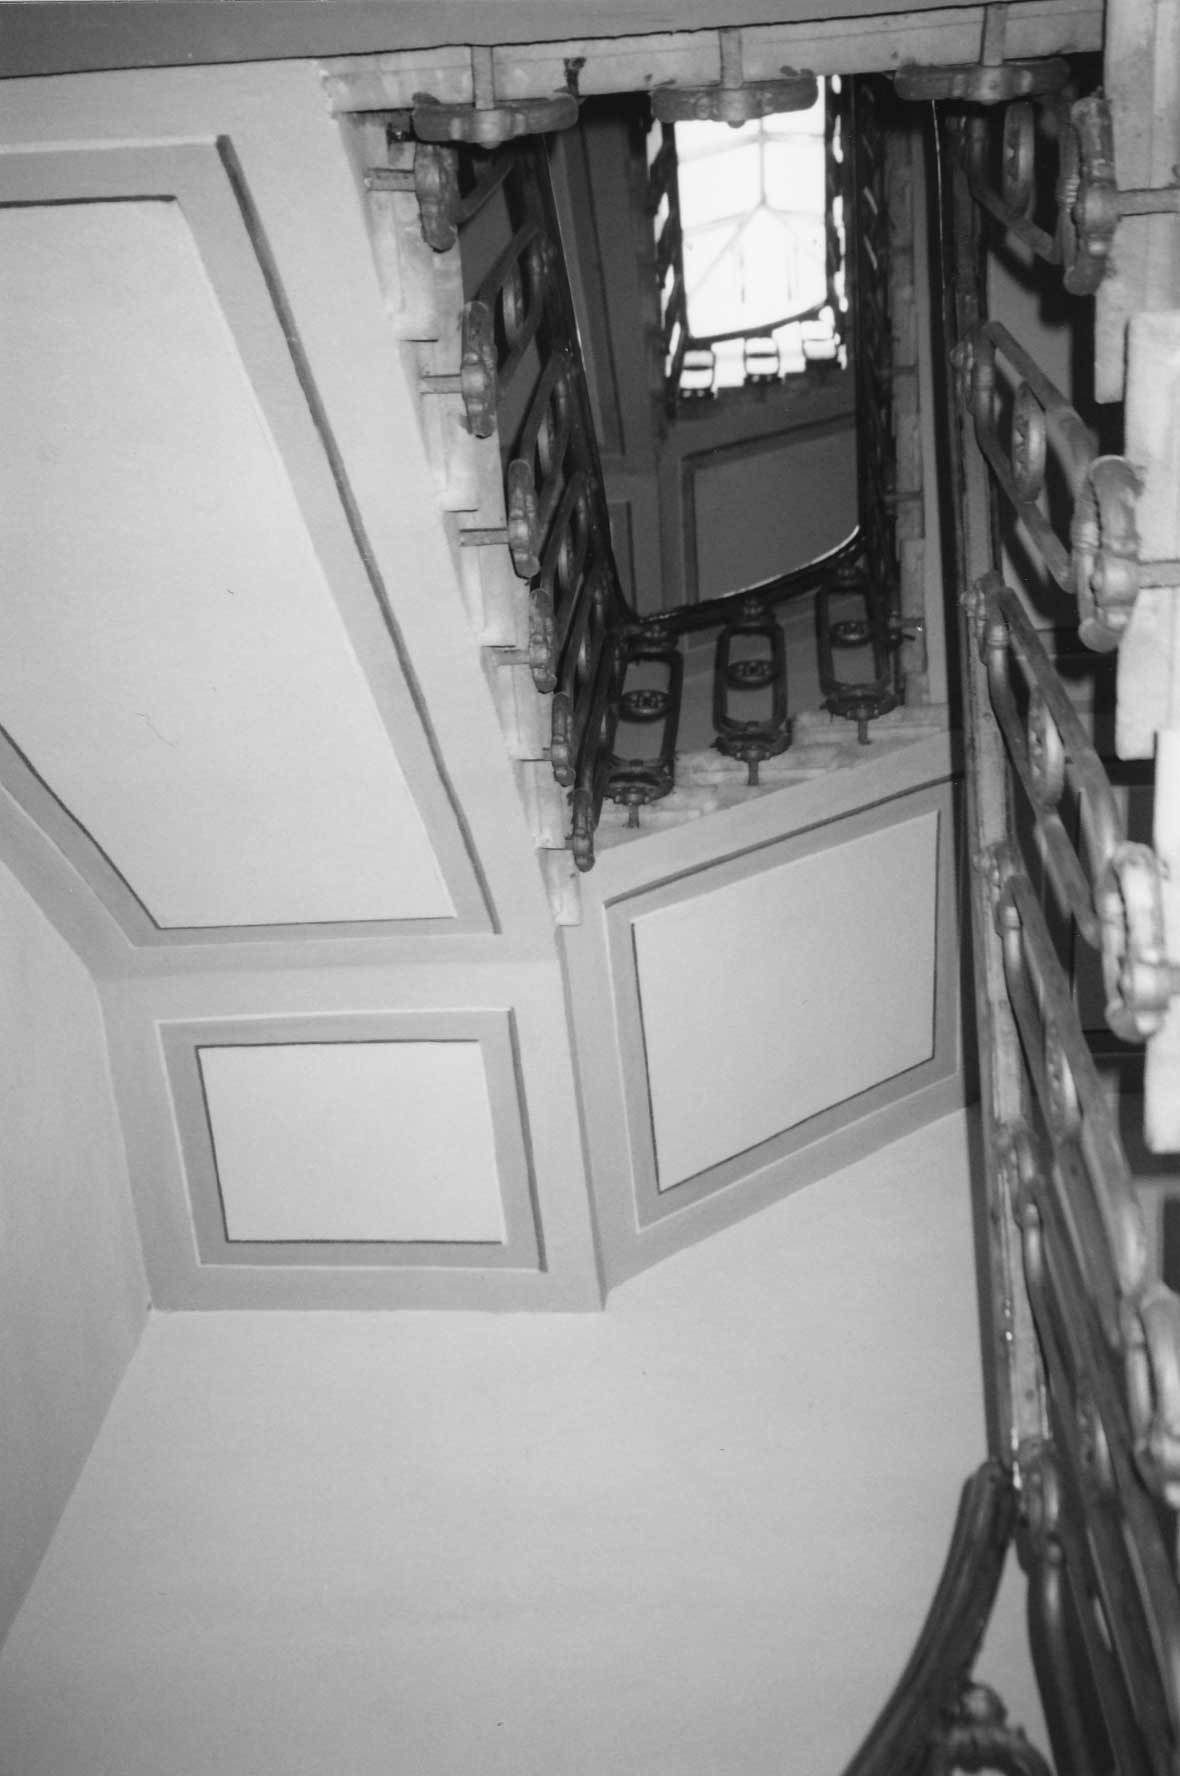 30 - Risanamento, restauro conservativo e arredo del 1° e 2° piano di palazzina in via dei Servi, Firenze - Vista interna di dettaglio